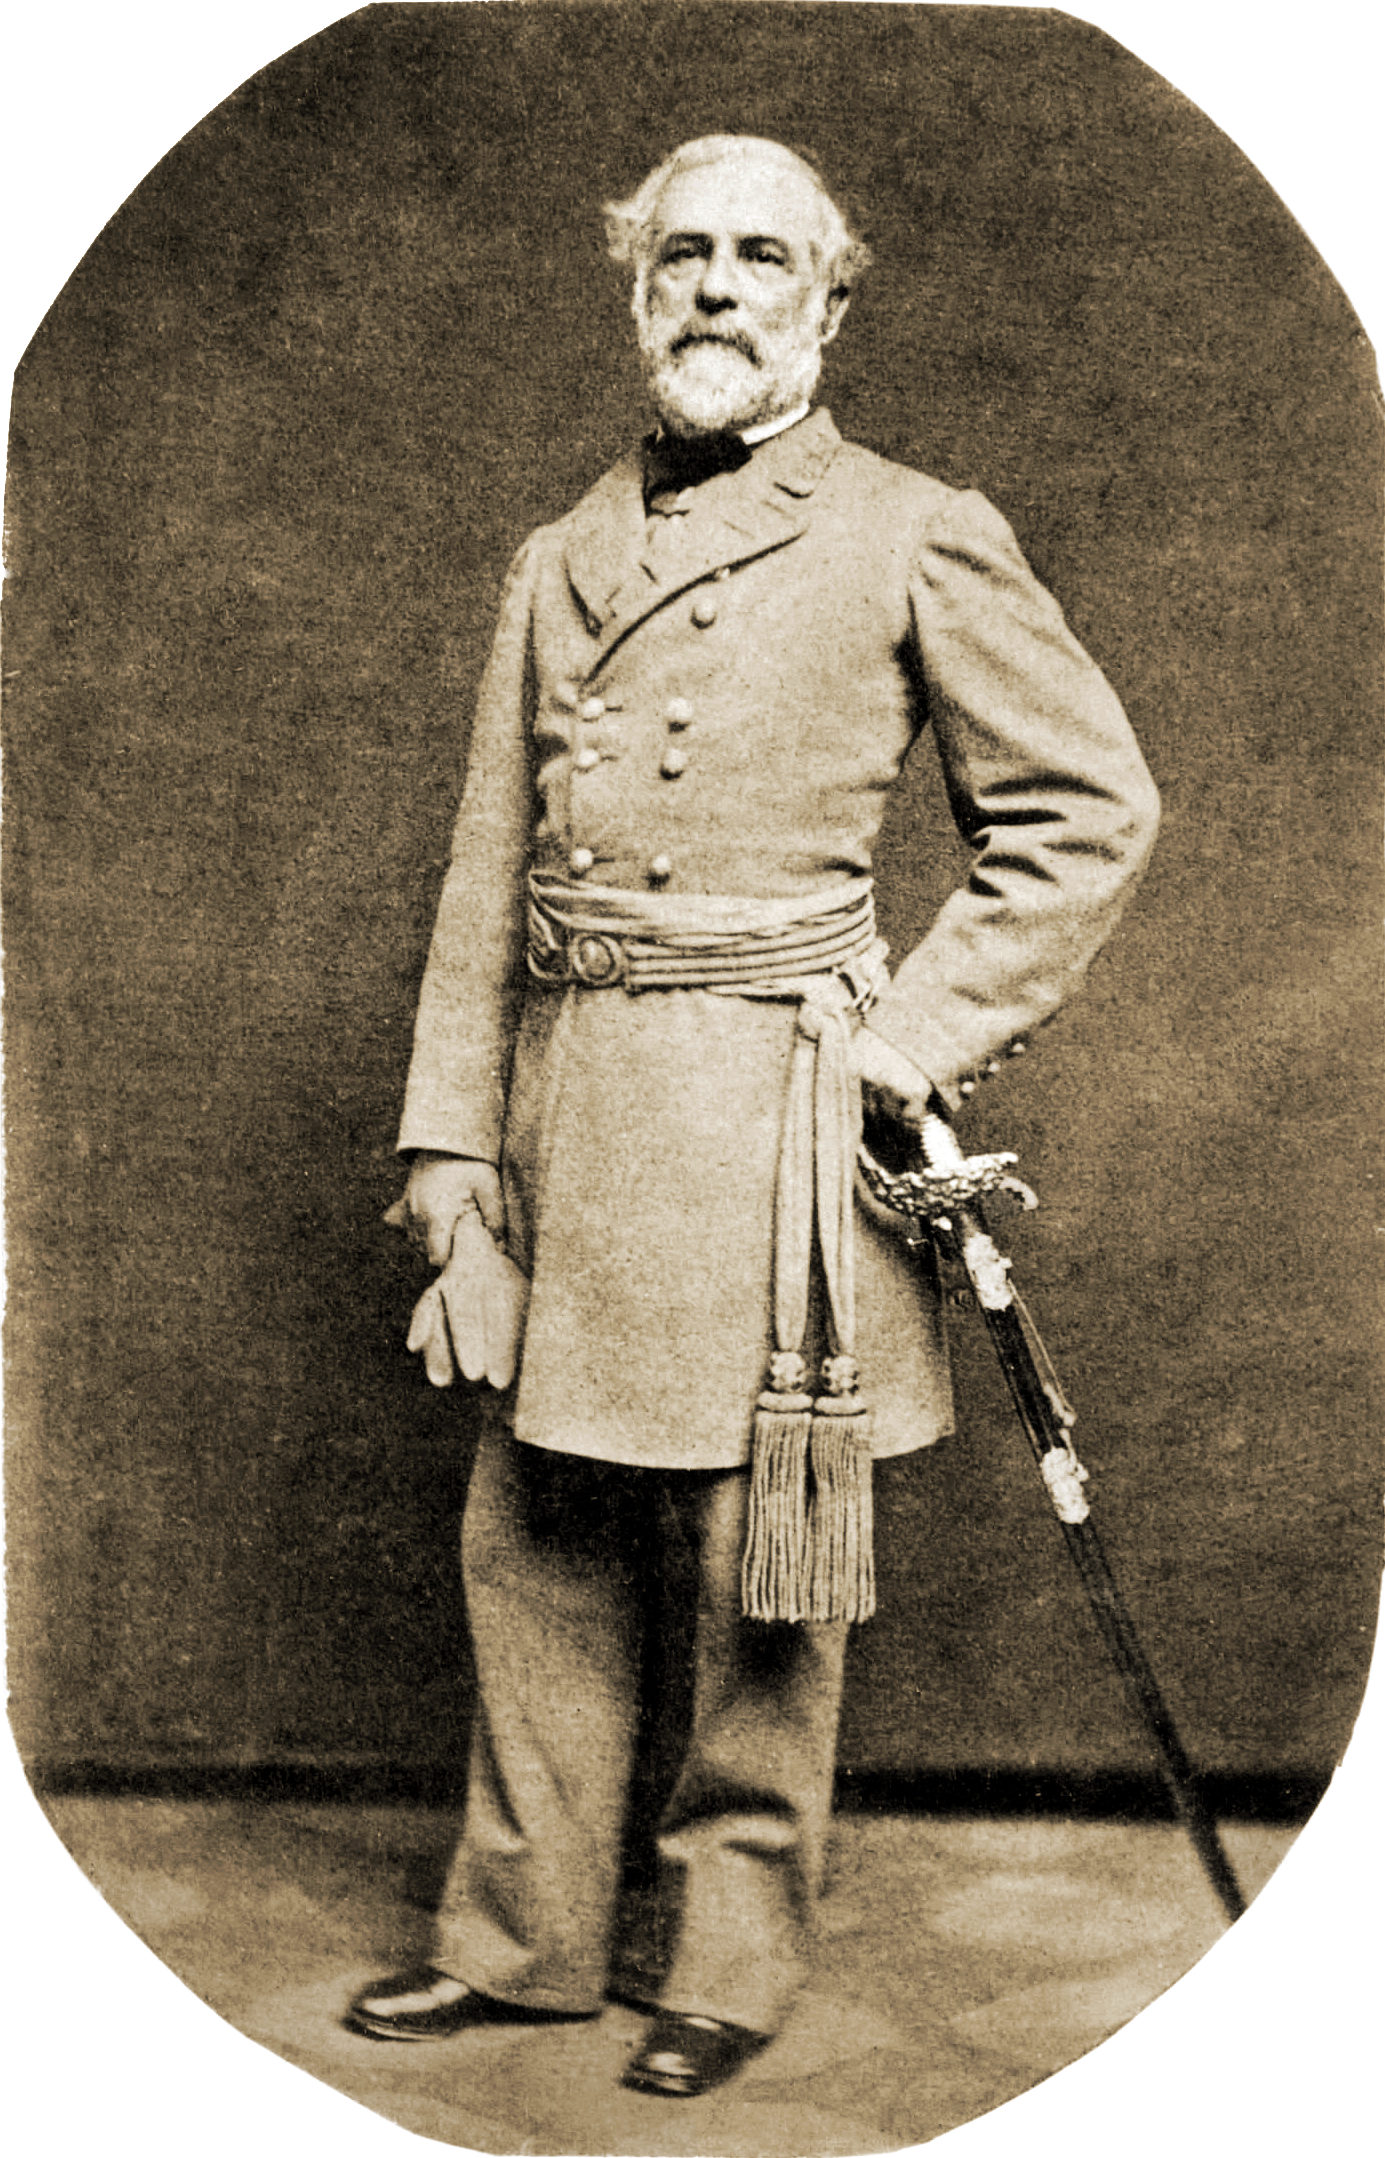 Robert E. Lee, son of Light H